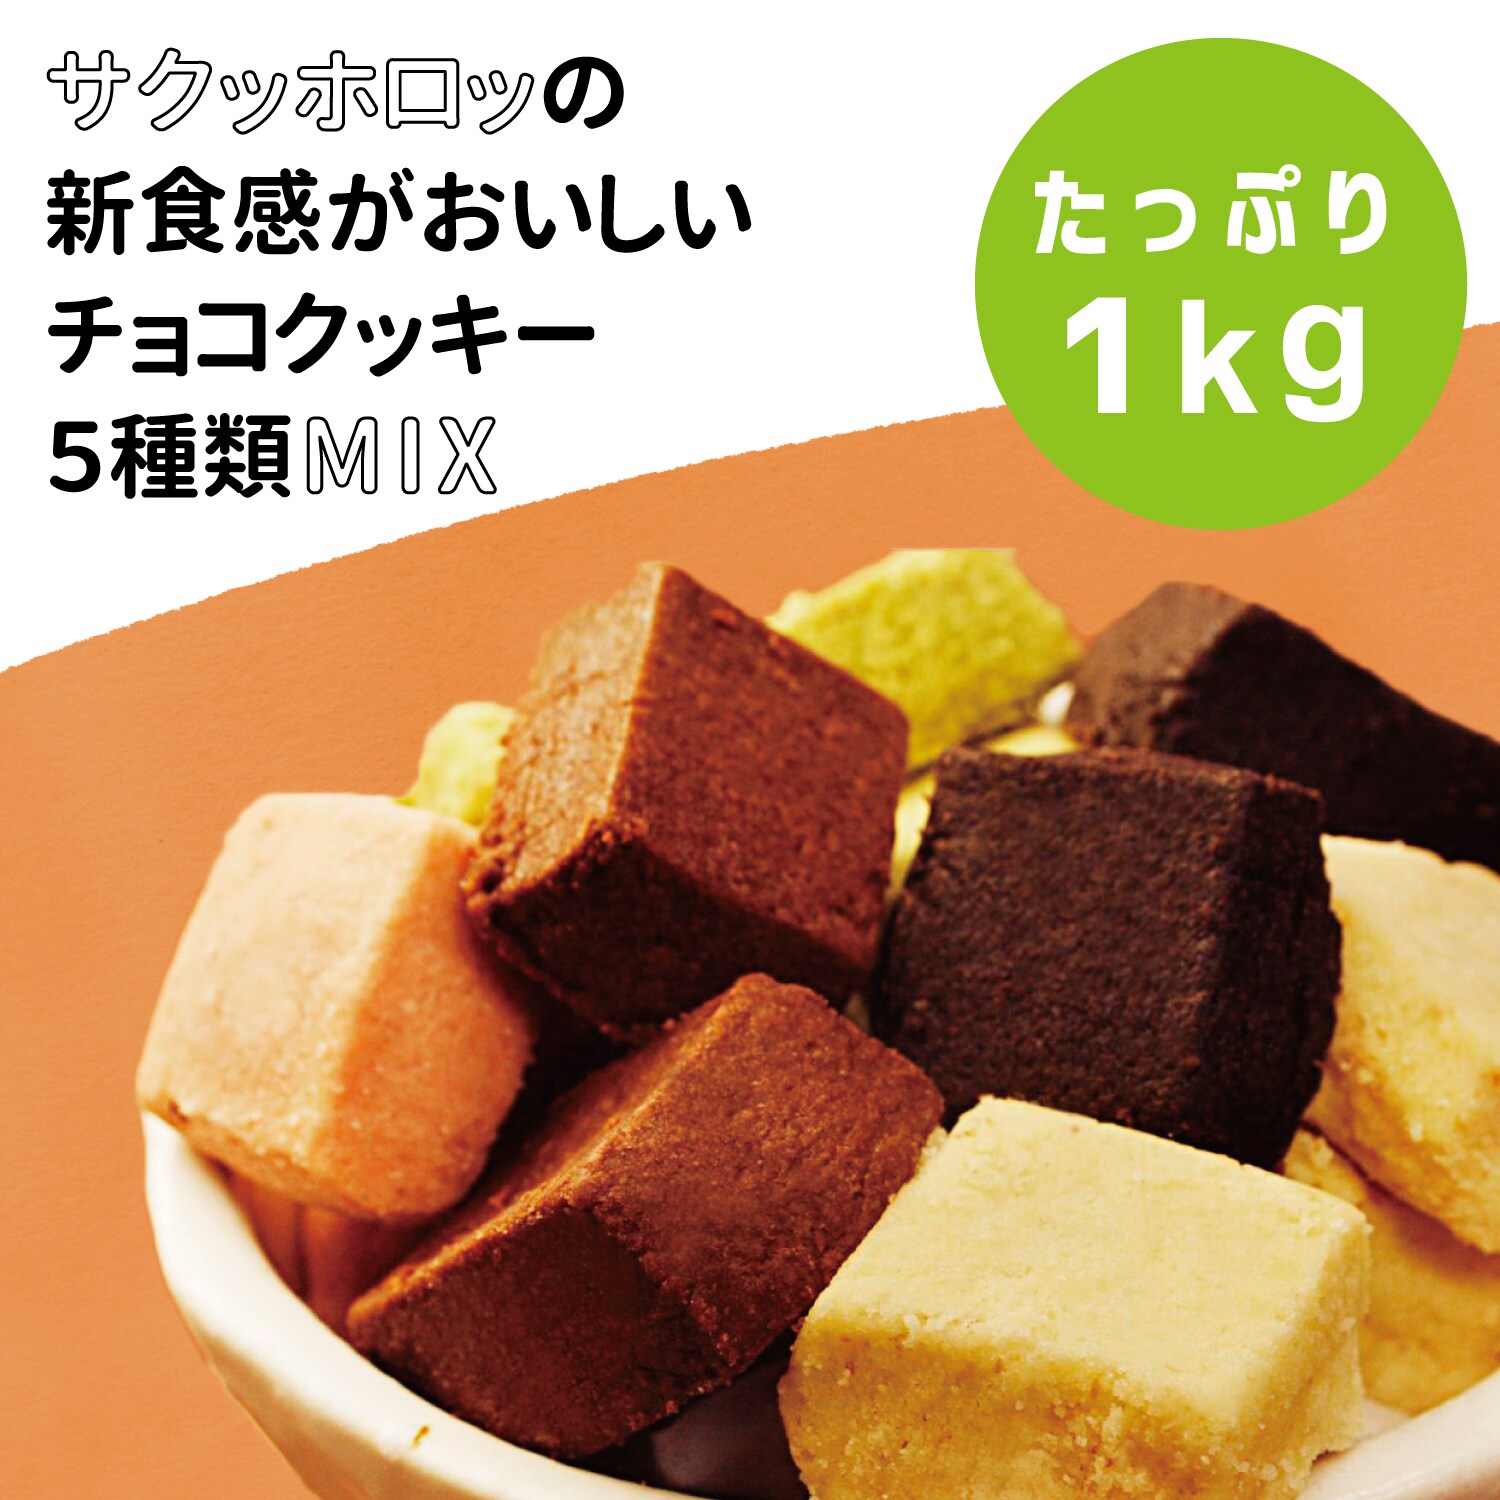 【蒲屋忠兵衛商店】ホロッとほどける新食感チュベドクッキー 1kg